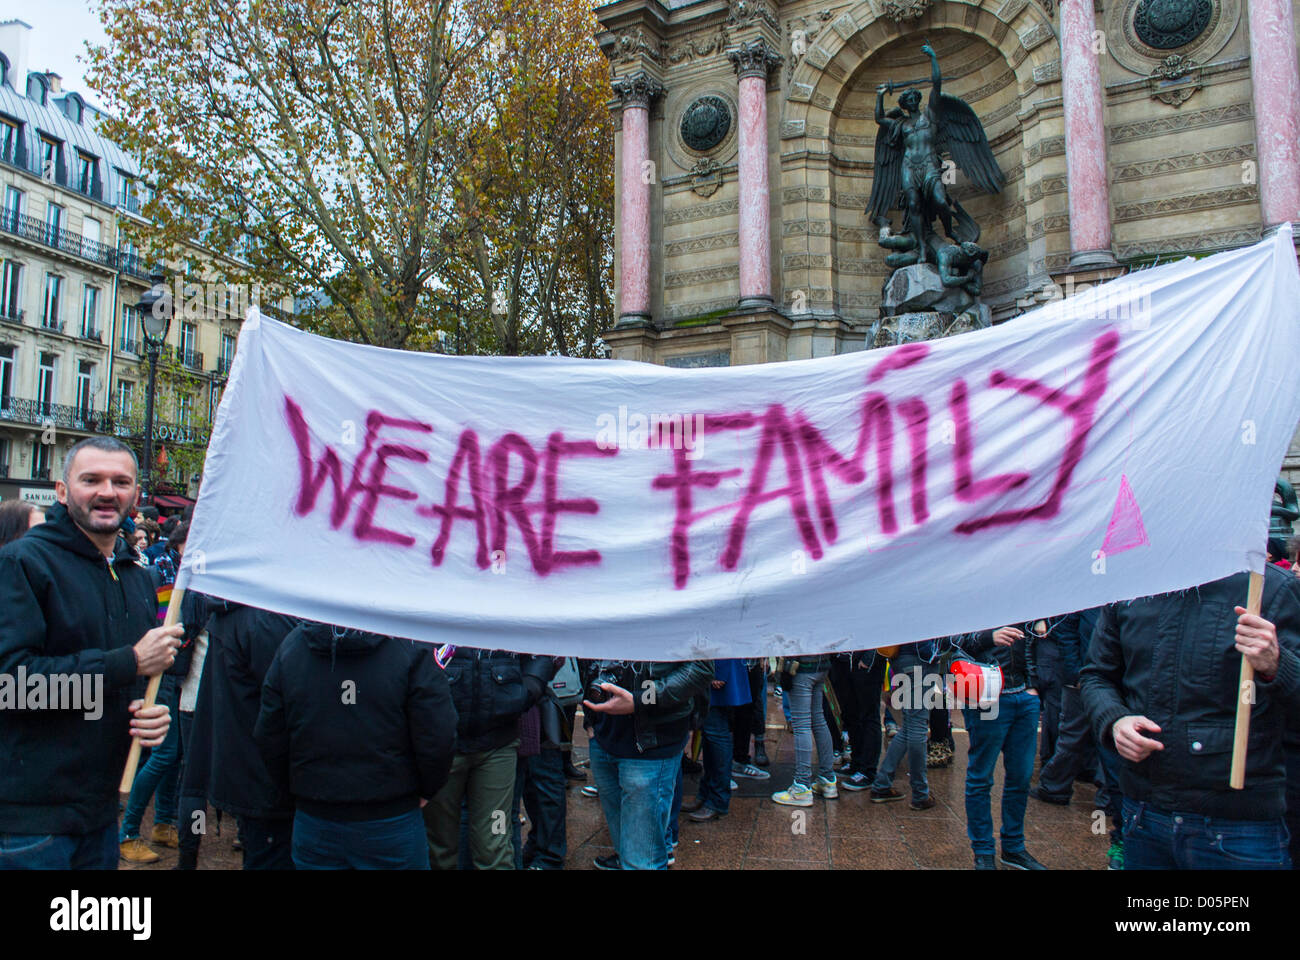 París, Francia, Adolescentes sosteniendo Banderas de Protesta Gay, 'Somos Familia' en Pro Gay Marriage, protestando por Activismo de Protesta LGTB francés, Rally de Igualdad Matrimonial, Banderas de los manifestantes, Protesta GAY familiar Foto de stock